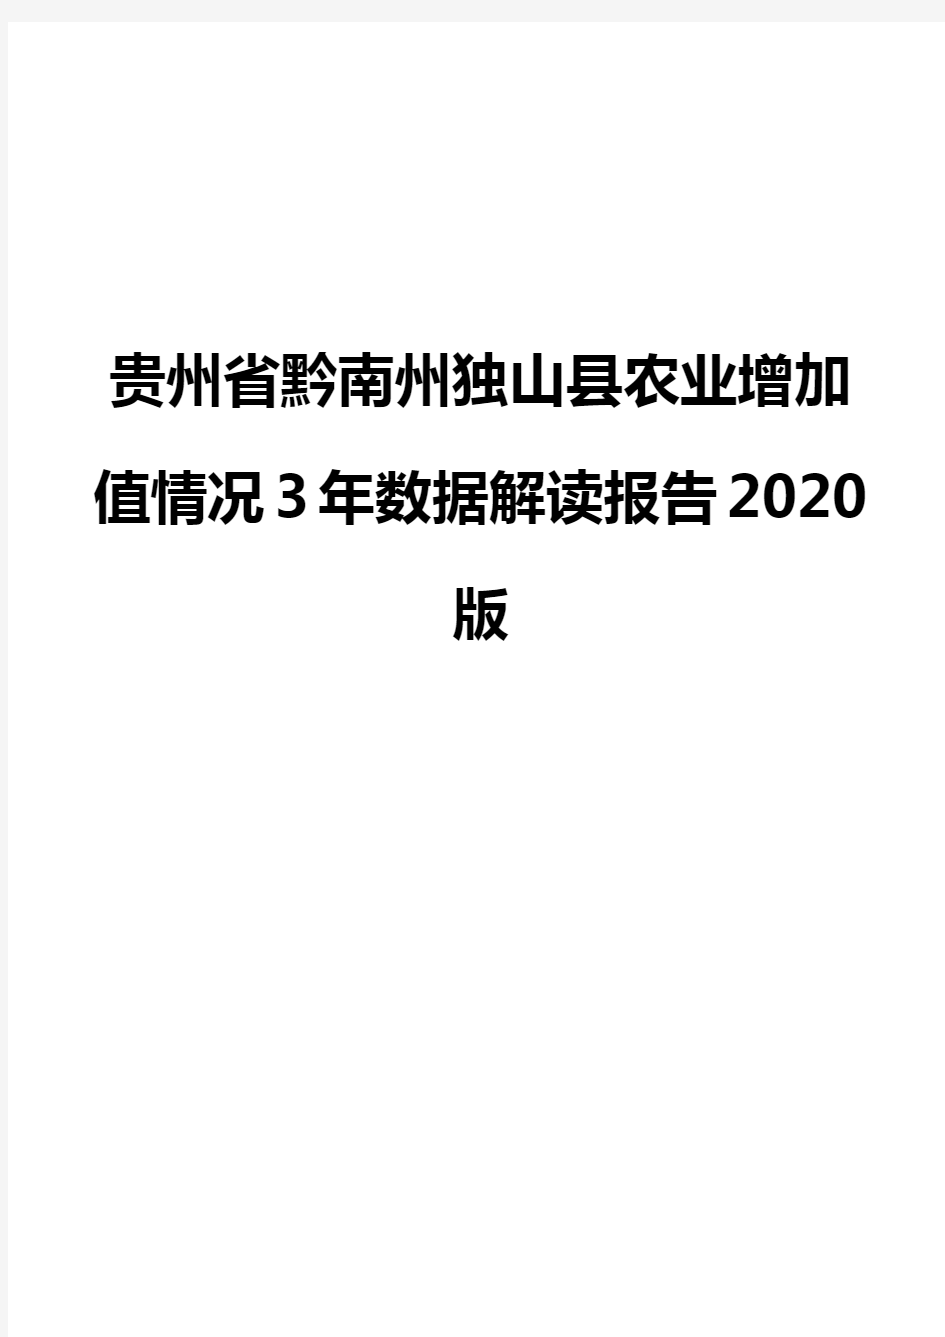 贵州省黔南州独山县农业增加值情况3年数据解读报告2020版